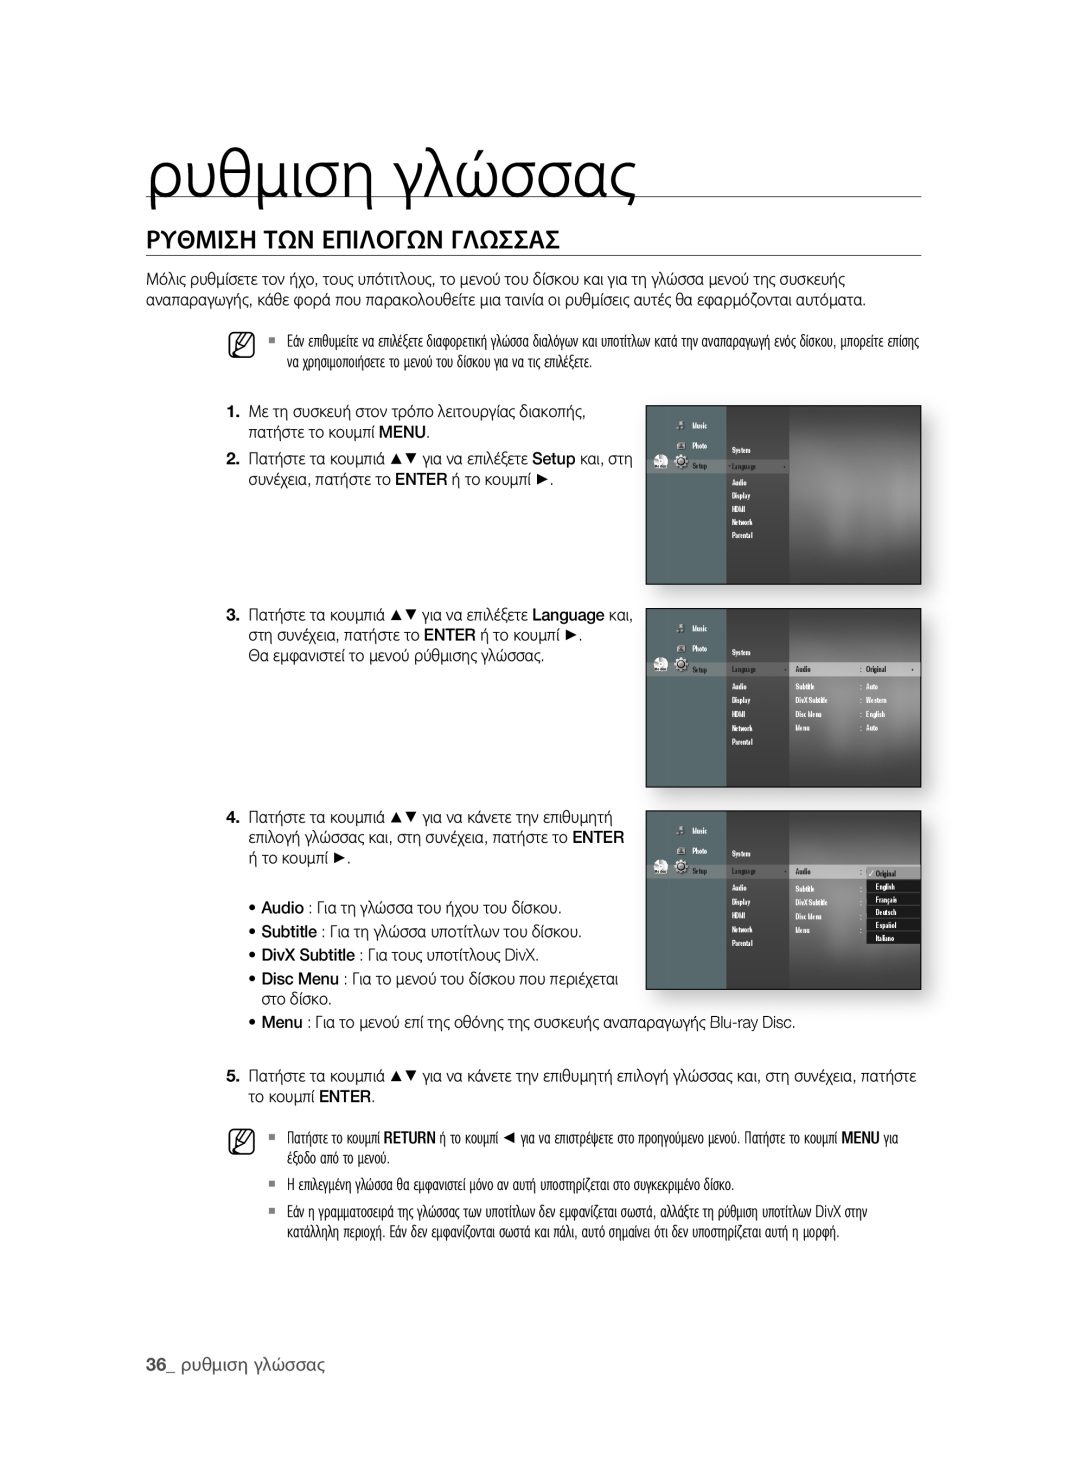 Samsung BD-P1580/EDC manual ρΥθΜιση ΤΩΝ εΠιΛοΓΩΝ ΓΛΩσσΑσ, 3 ρυθμιση γλώσσας 